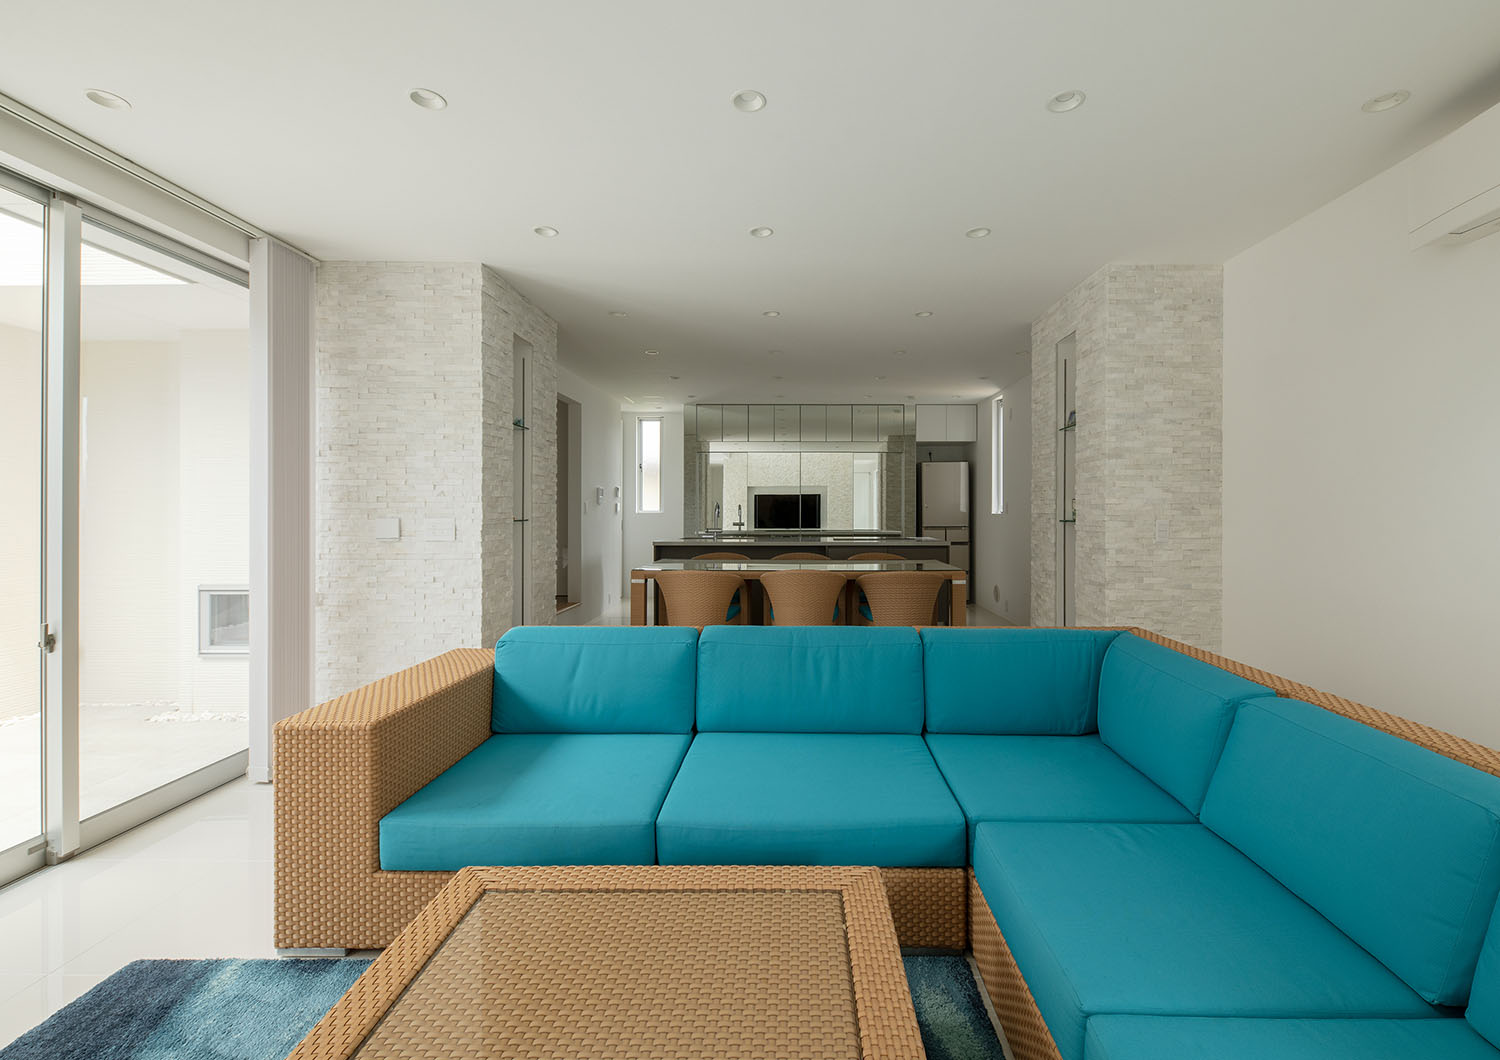 白を基調とした空間に青いソファーがアクセントになっているLDK・デザイン住宅